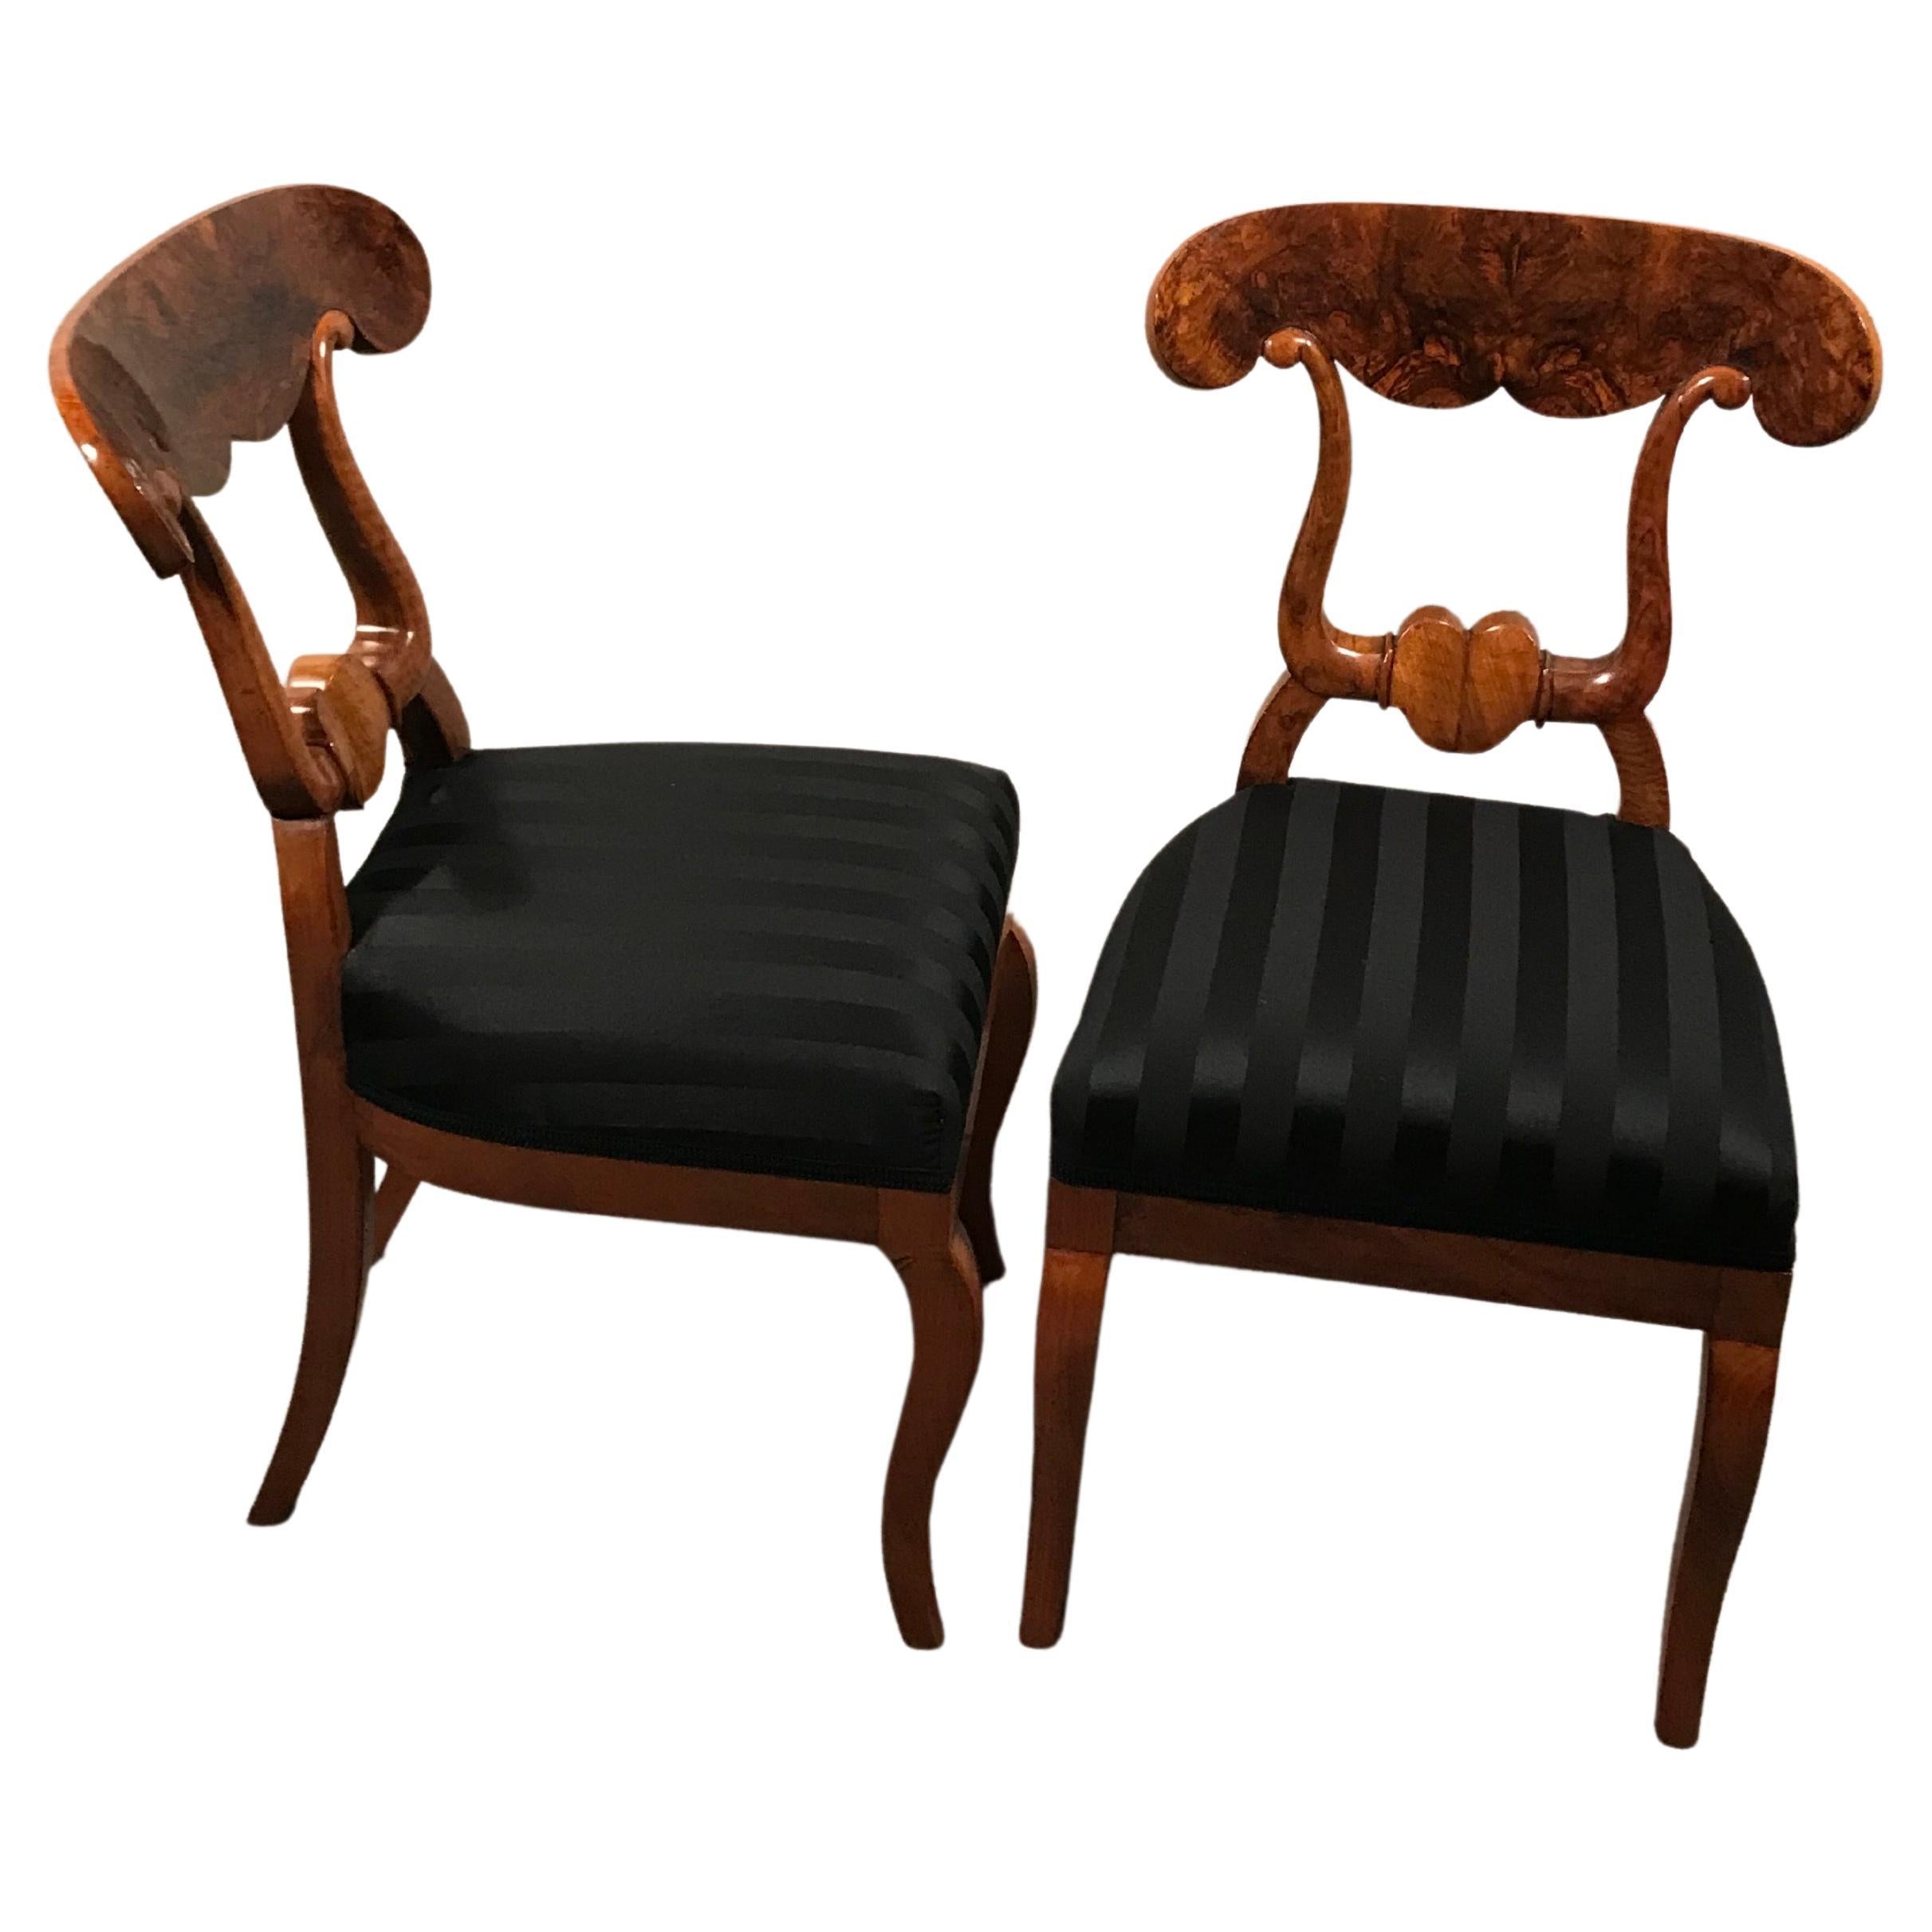 Dieser exquisite Satz von 6 originalen Biedermeier-Stühlen ist ein seltener Fund. 
Die so genannten Original Biedermeier Ochsenkopf-Stühle haben ihren Namen von ihrer schön gestalteten Rückenlehne. Sie stammen aus der Zeit um 1820 und kommen aus